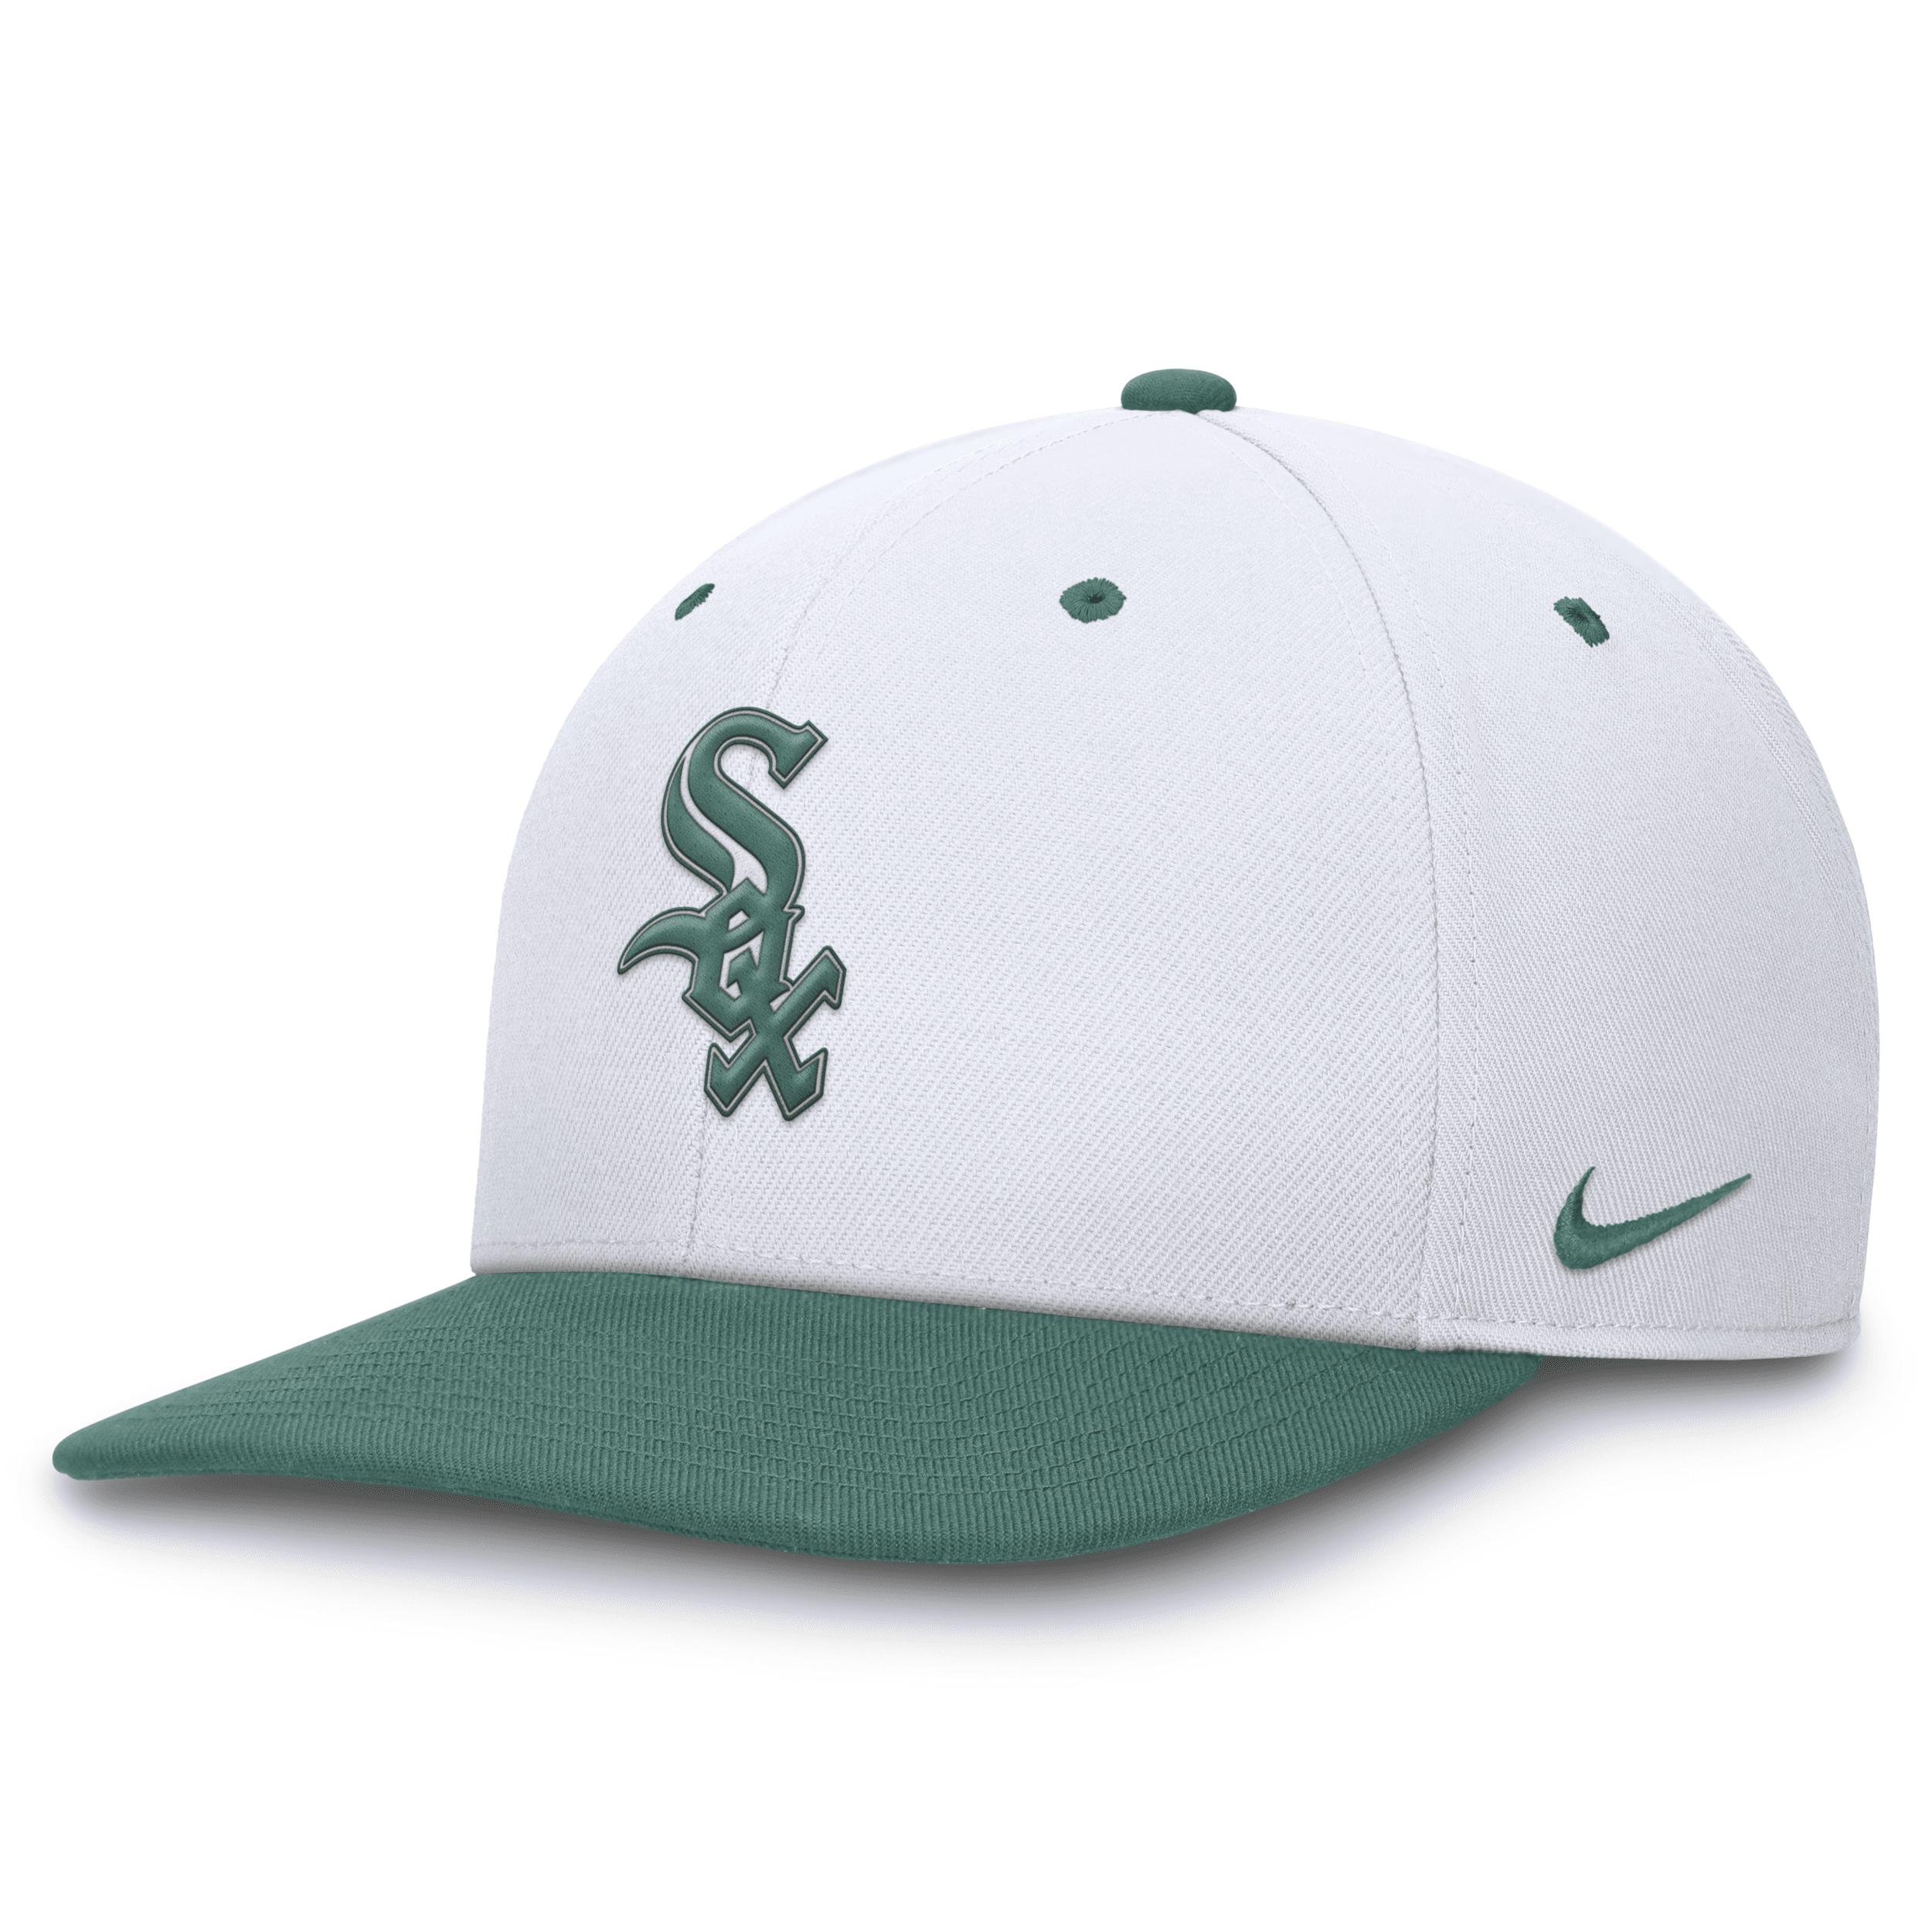 Chicago White Sox Bicoastal 2-Tone Pro Nike Unisex Dri-FIT MLB Adjustable Hat by NIKE